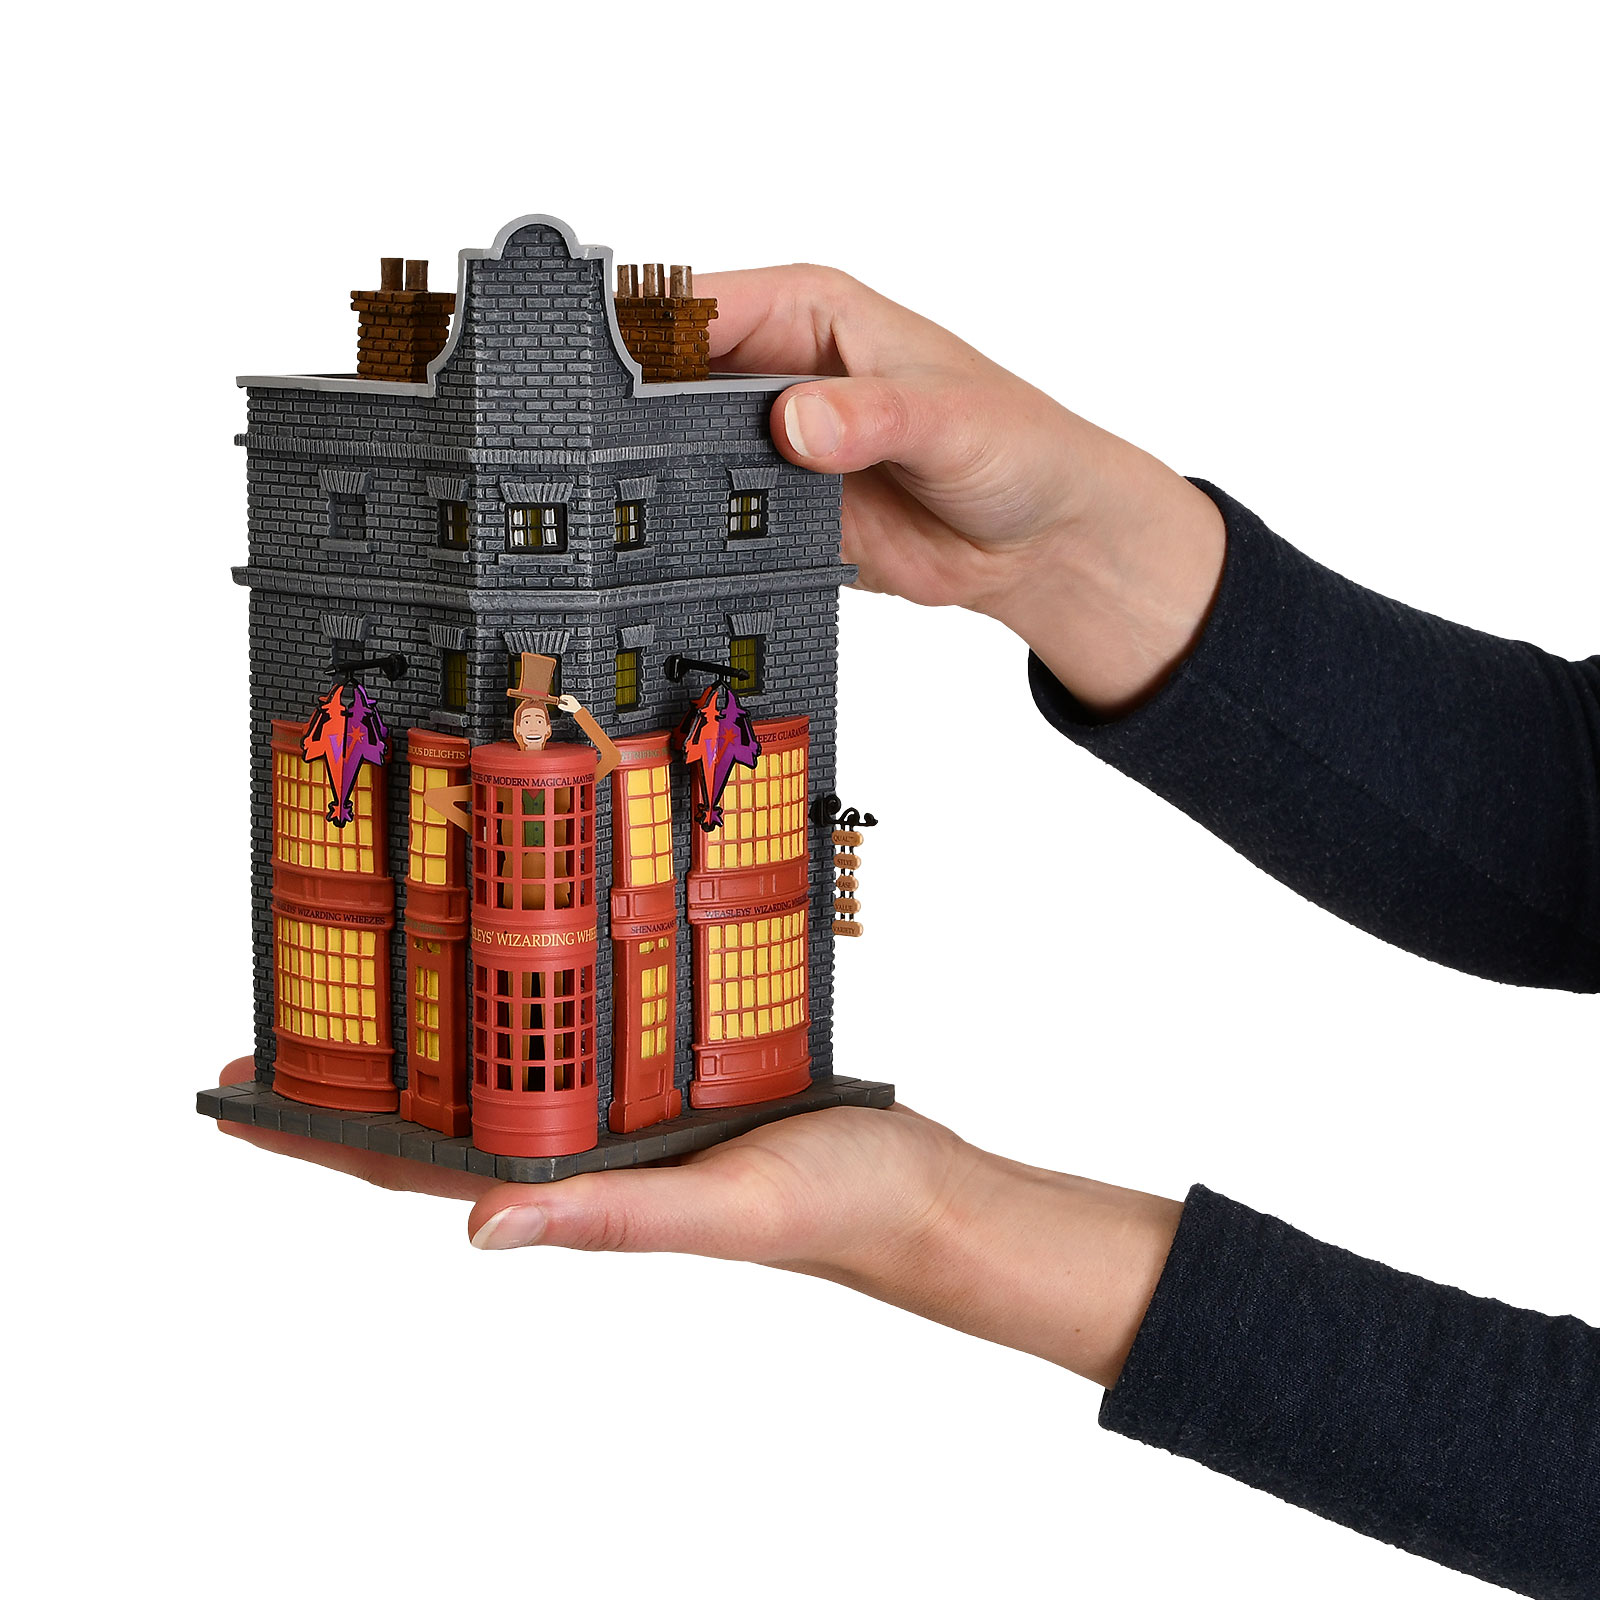 Weasleys Zauberhafte Zauberscherze Miniatur Replik mit Beleuchtung - Harry Potter